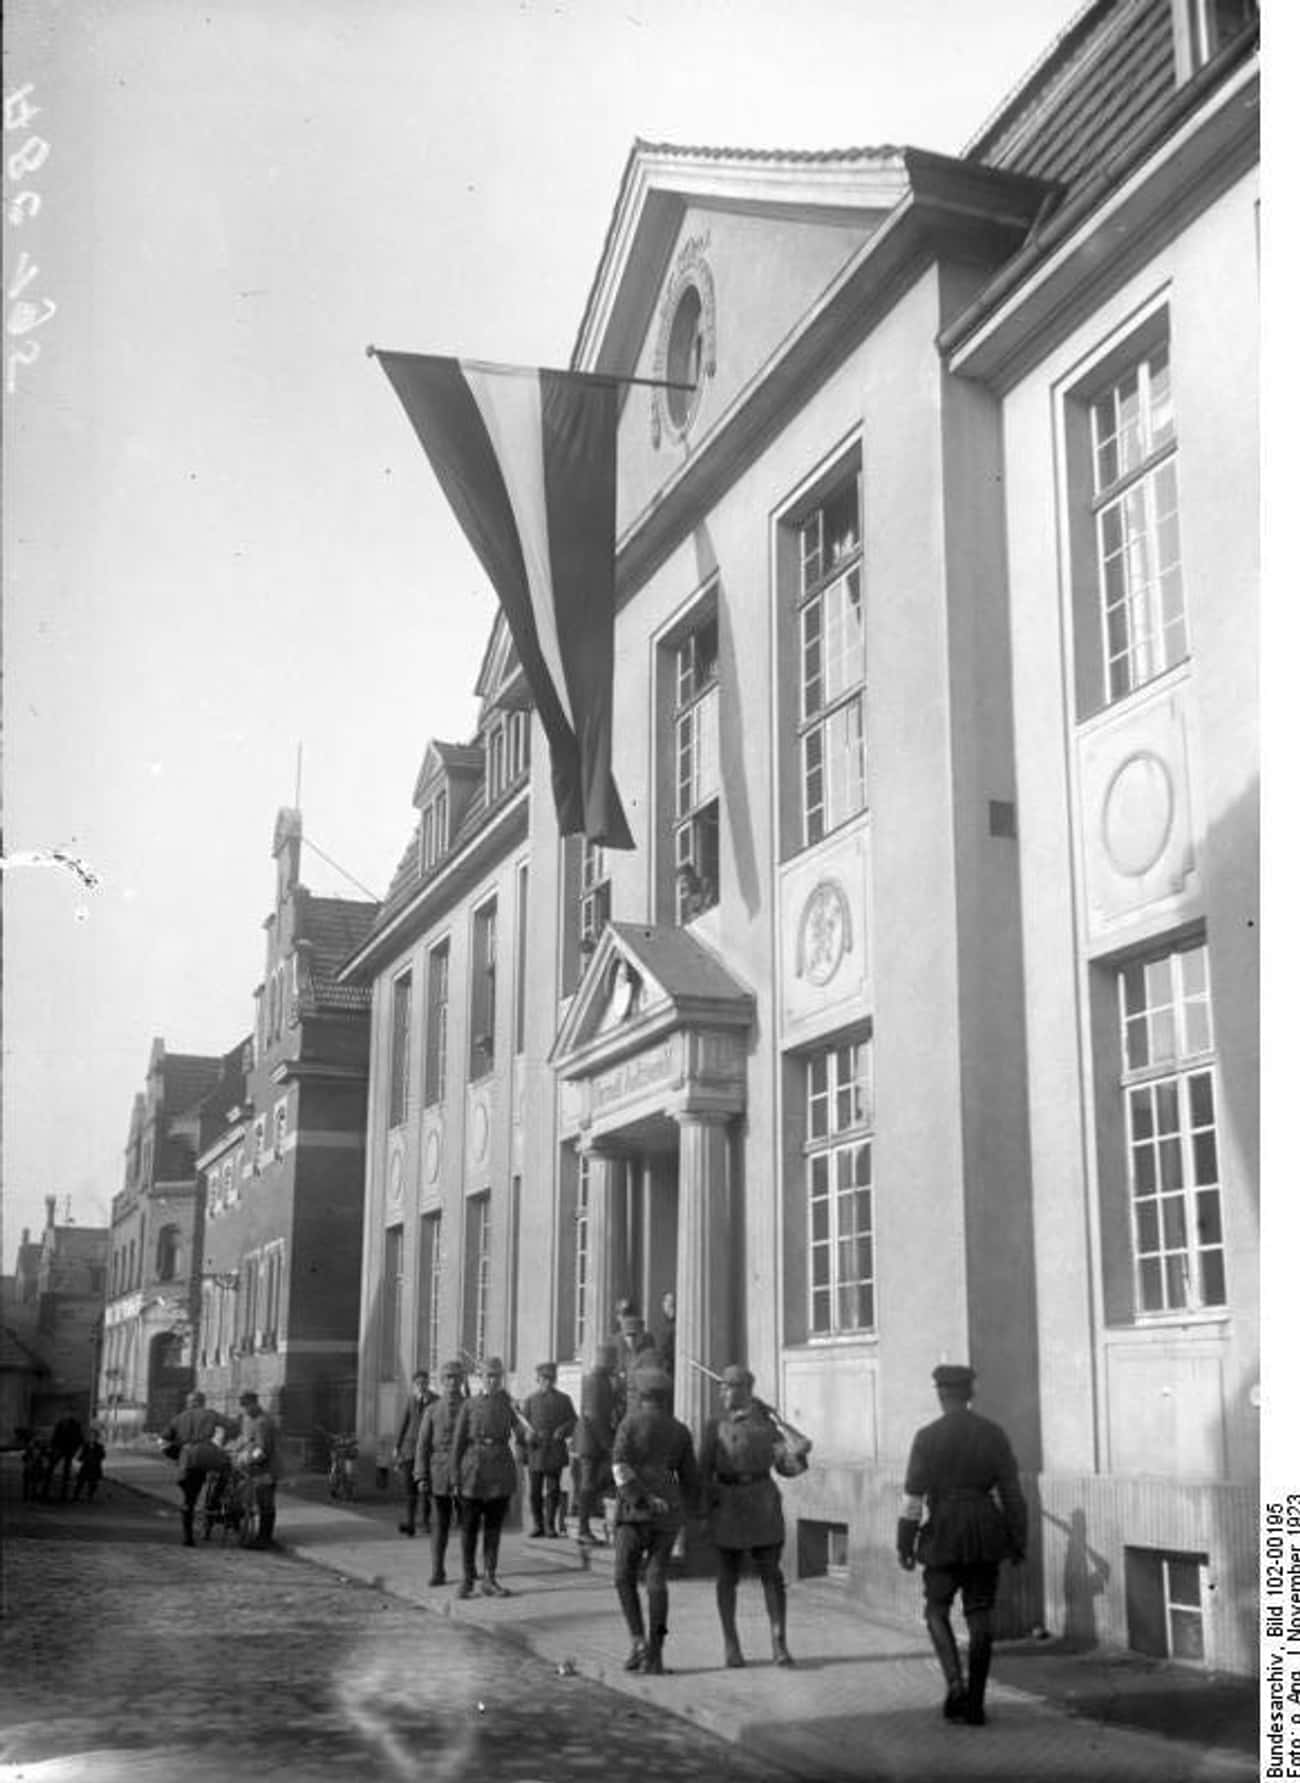 Munich Beer Hall Attempt, 1921